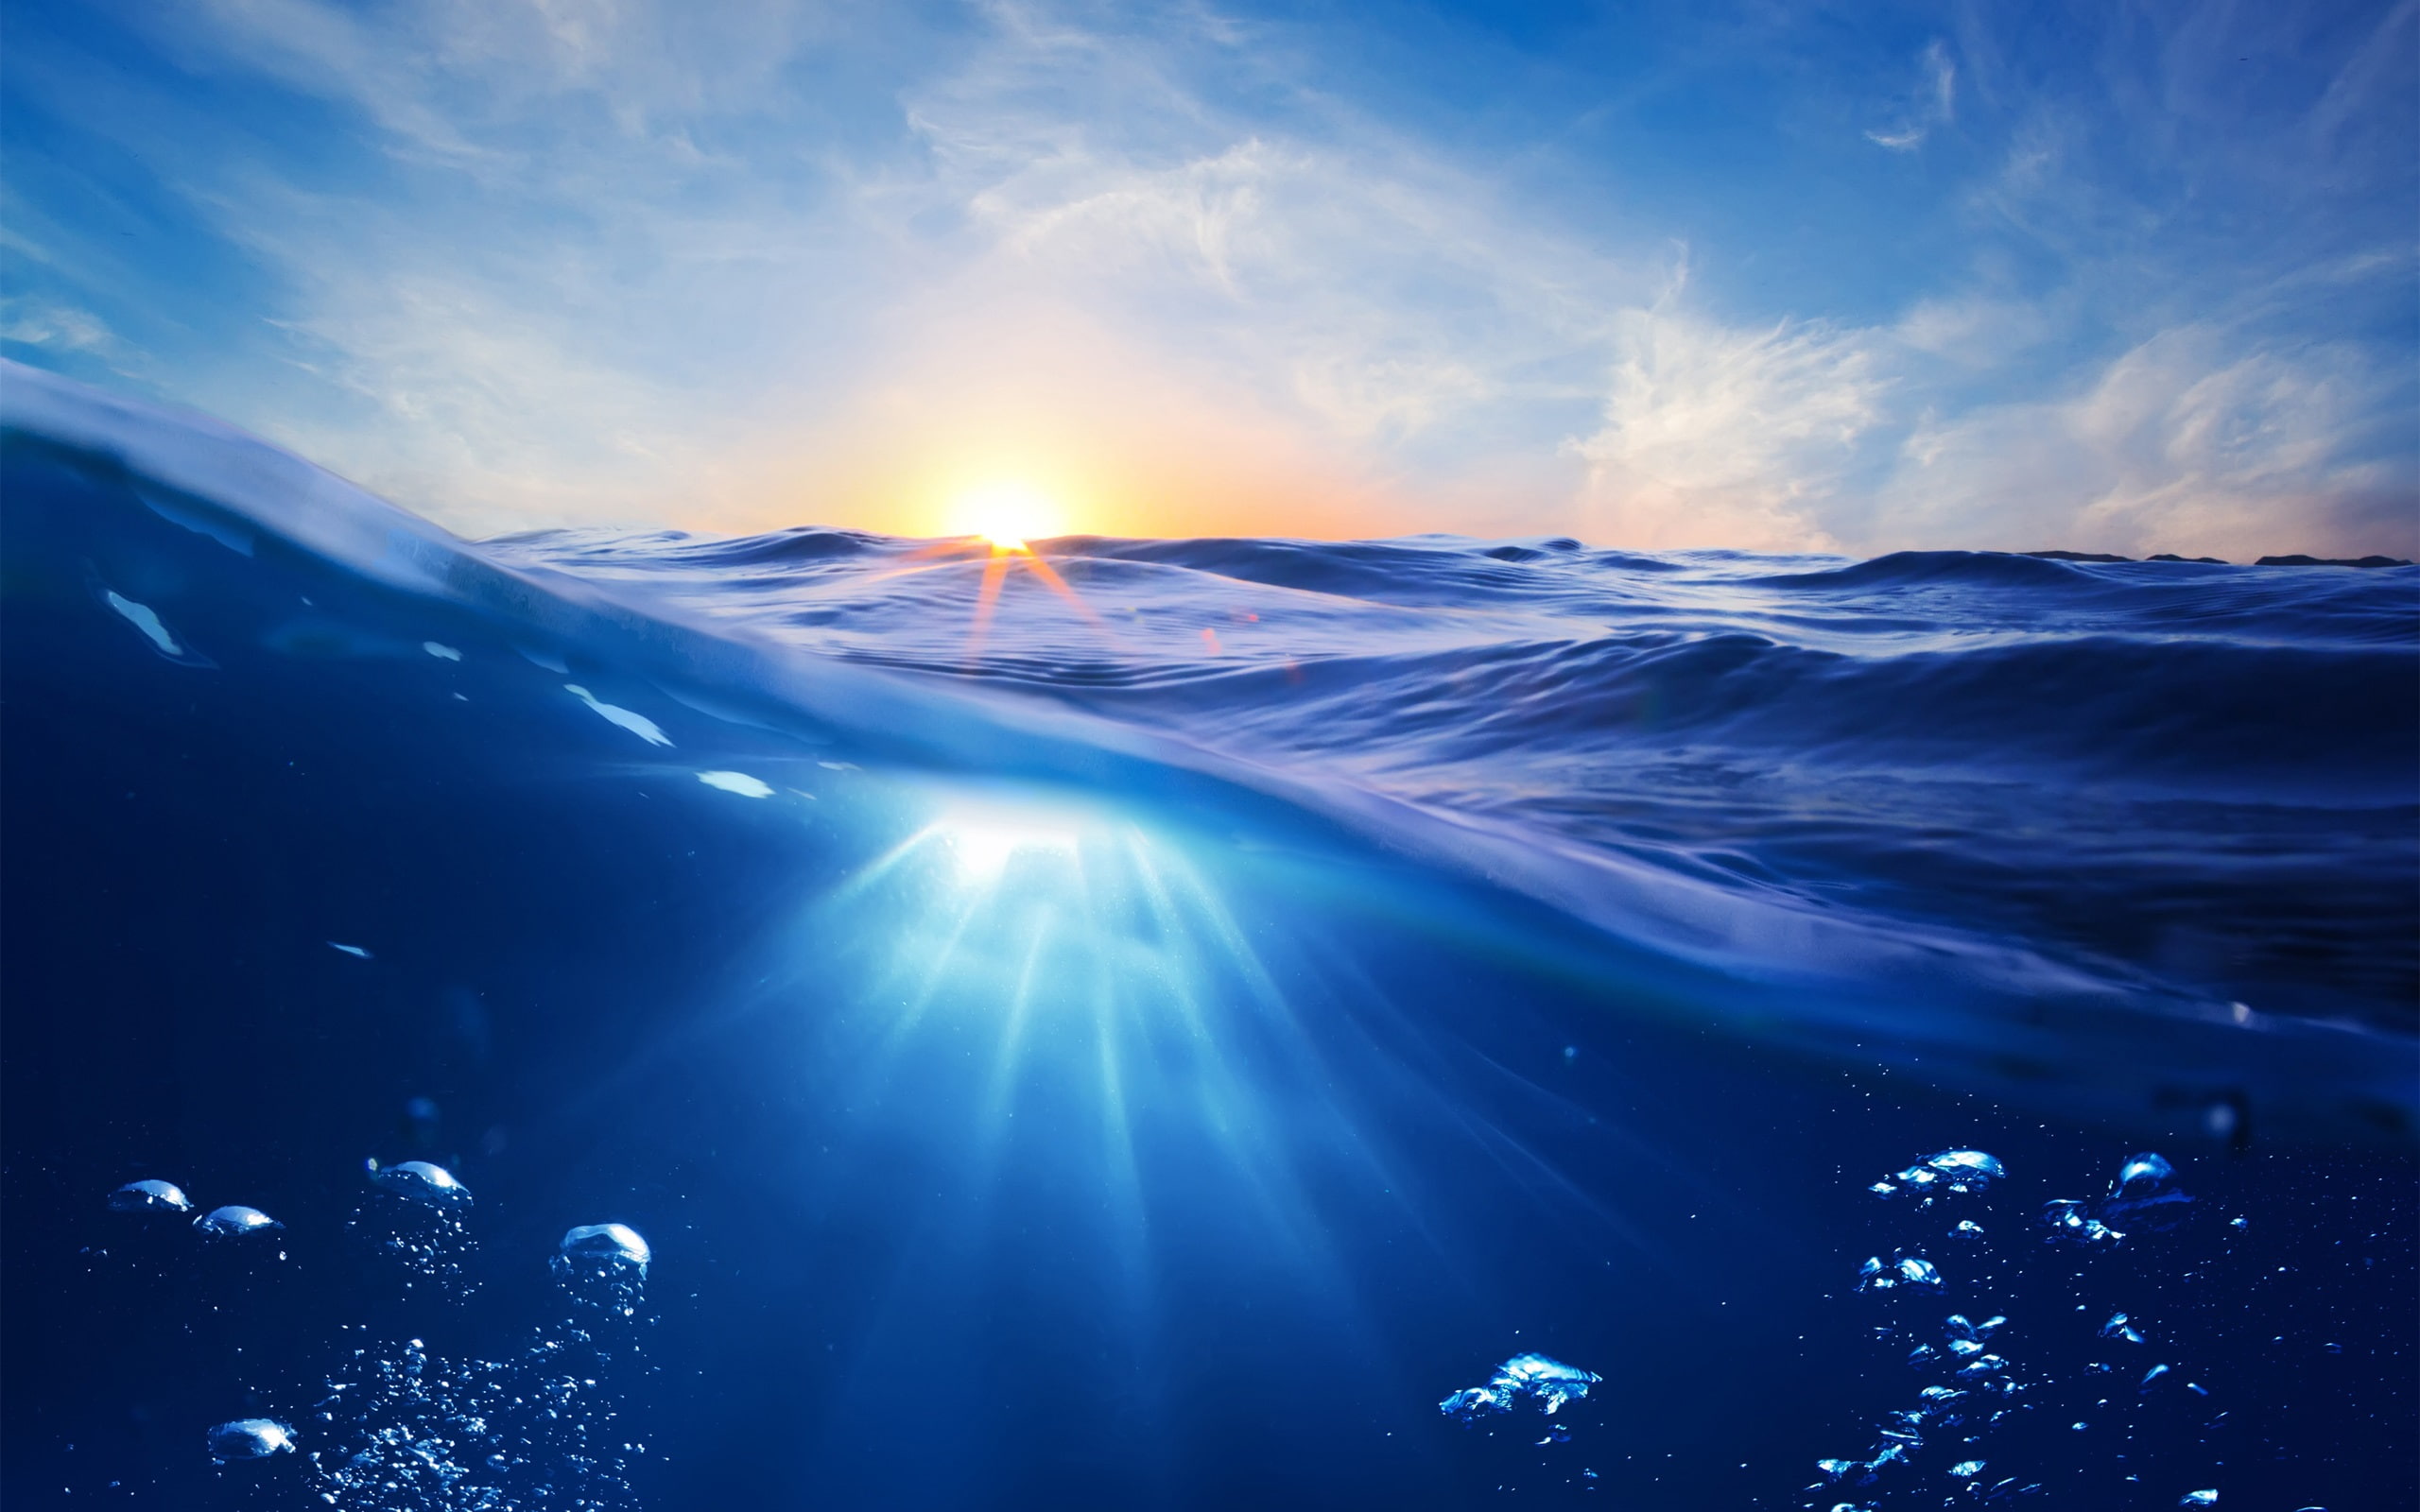 Ocean, sunset, sun, blue water, bubbles